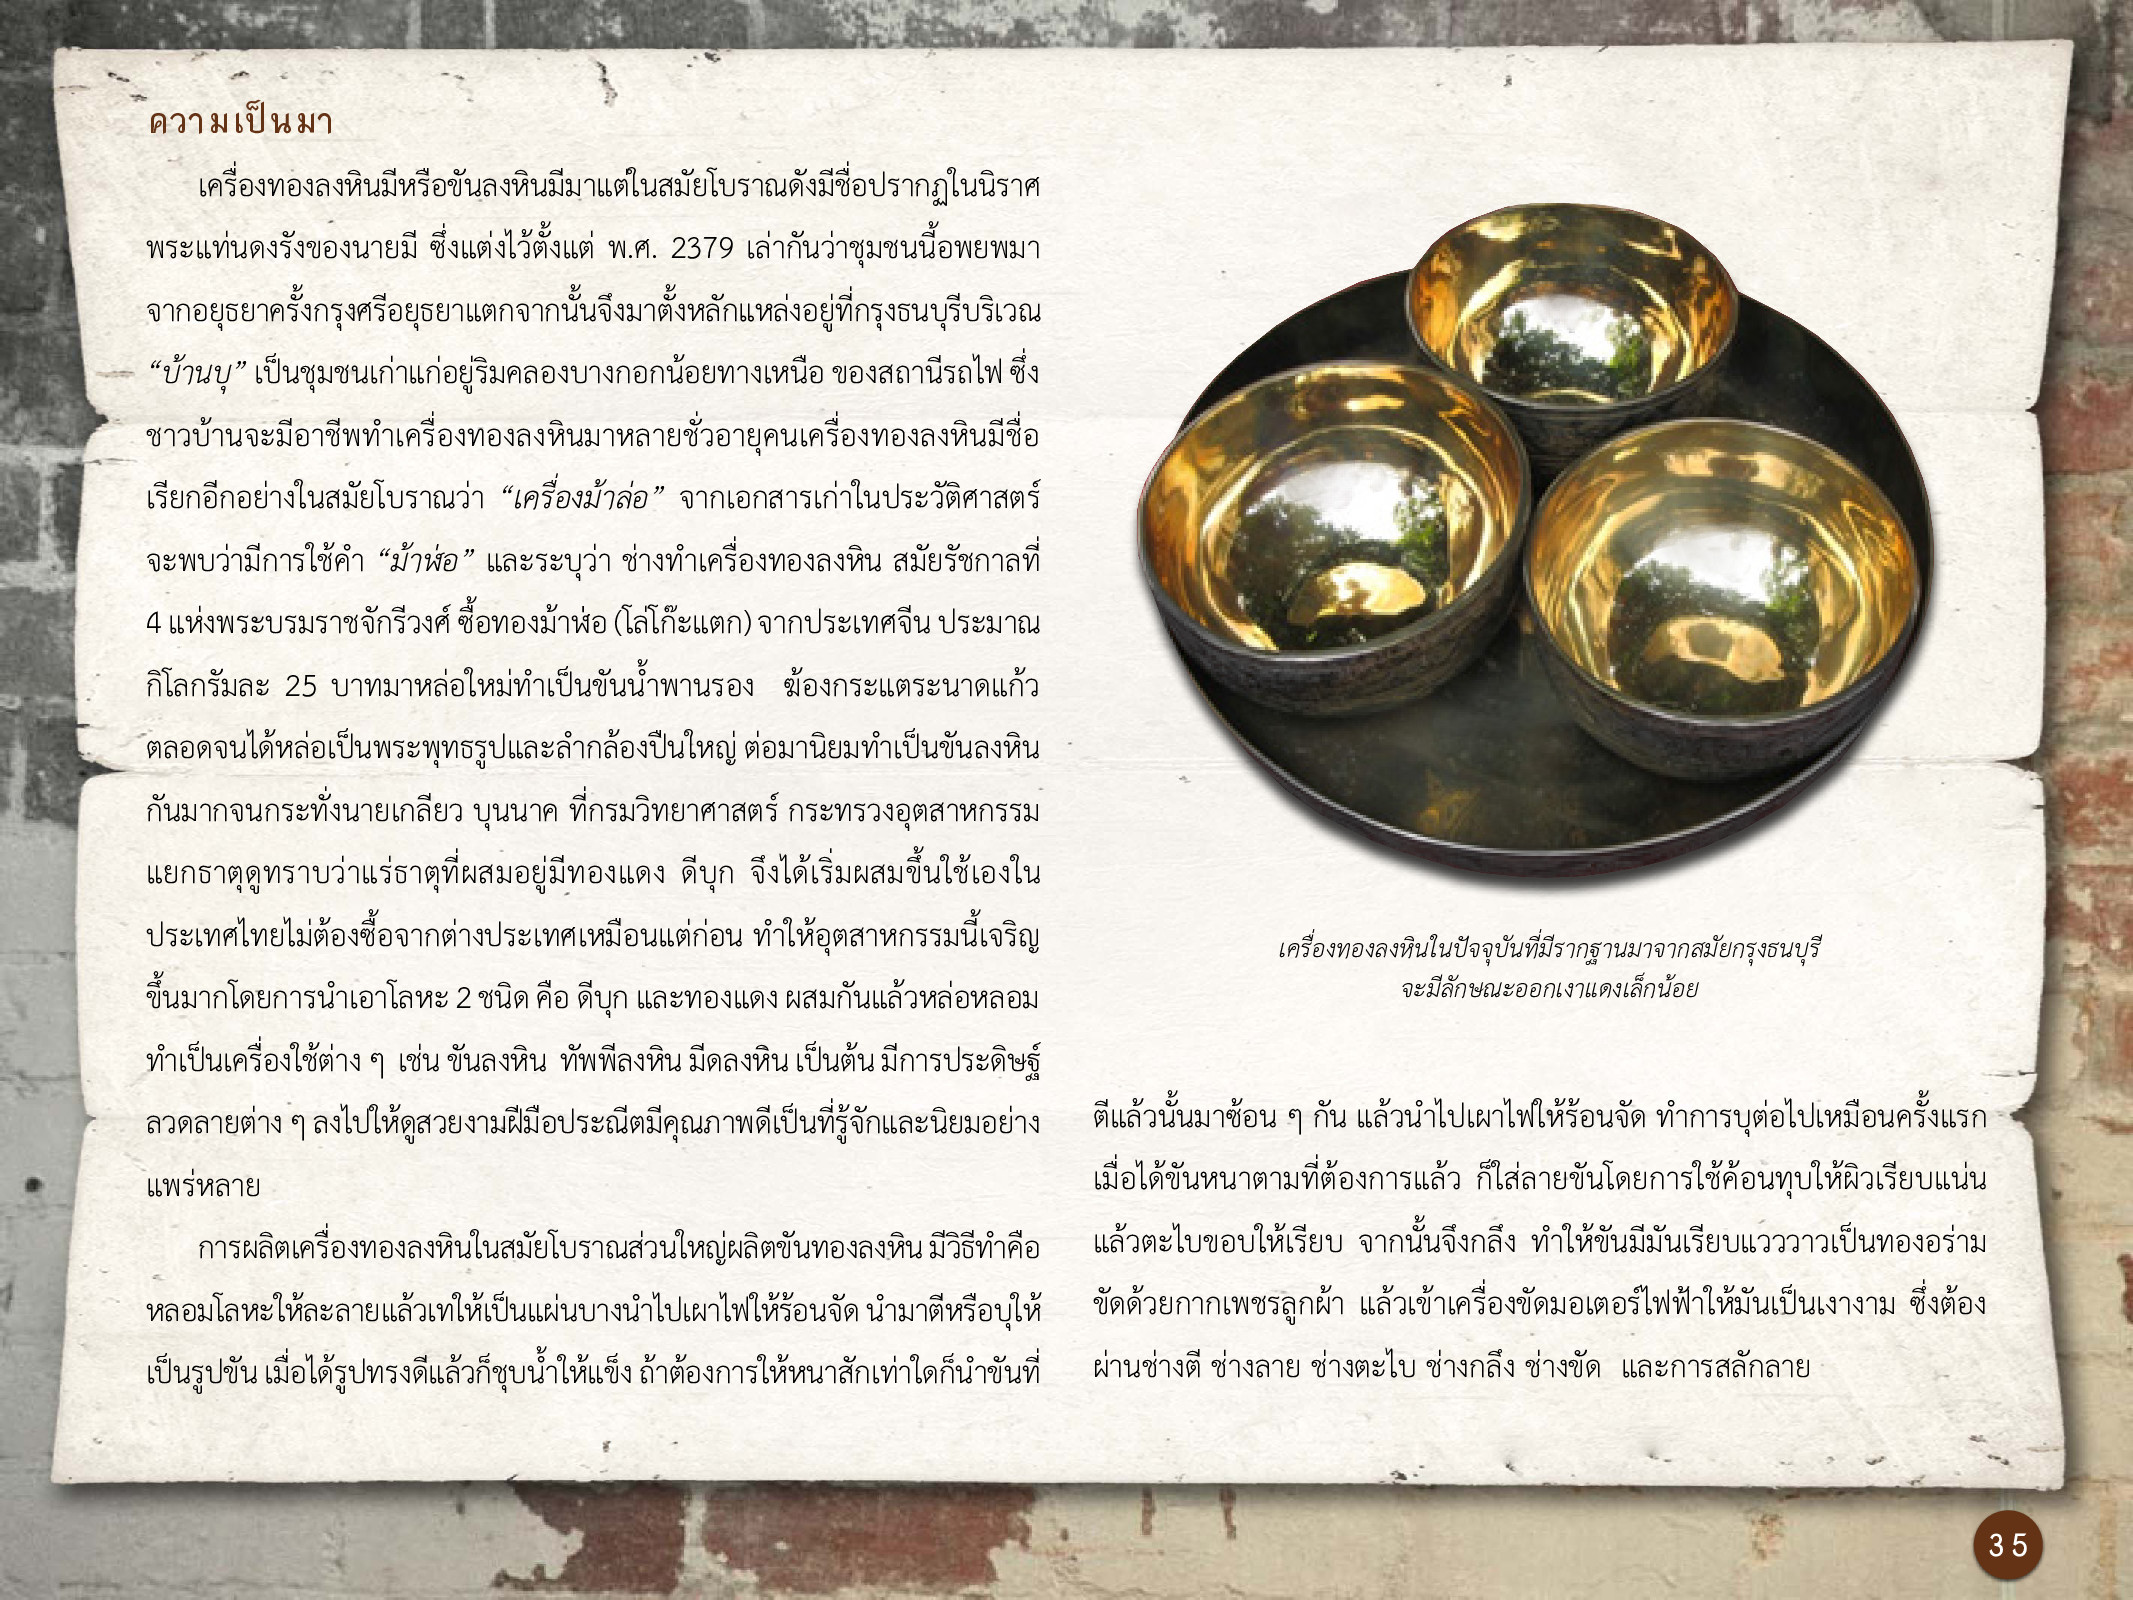 ศิลปกรรมกรุงธนบุรี ./images/encyclopedia/35.jpg